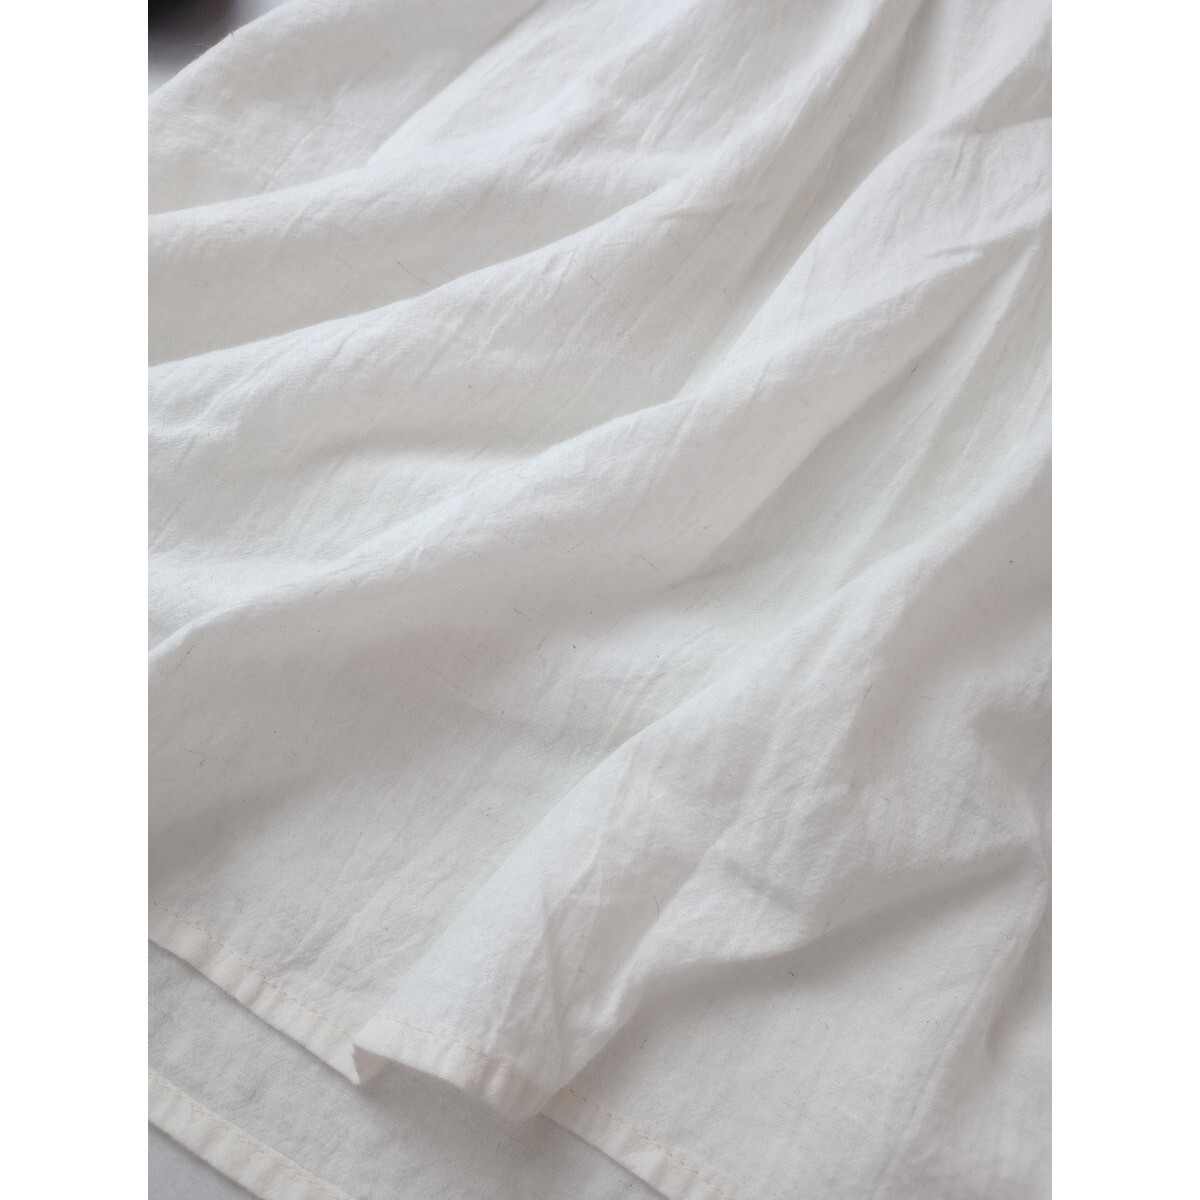 MidiUmi ミディウミ「自然体のわたしがイチバン」コットン リネン混 ボリューム袖 ロング ワンピース 日本製 オフ白 ホワイト (1Y+8988)の画像3